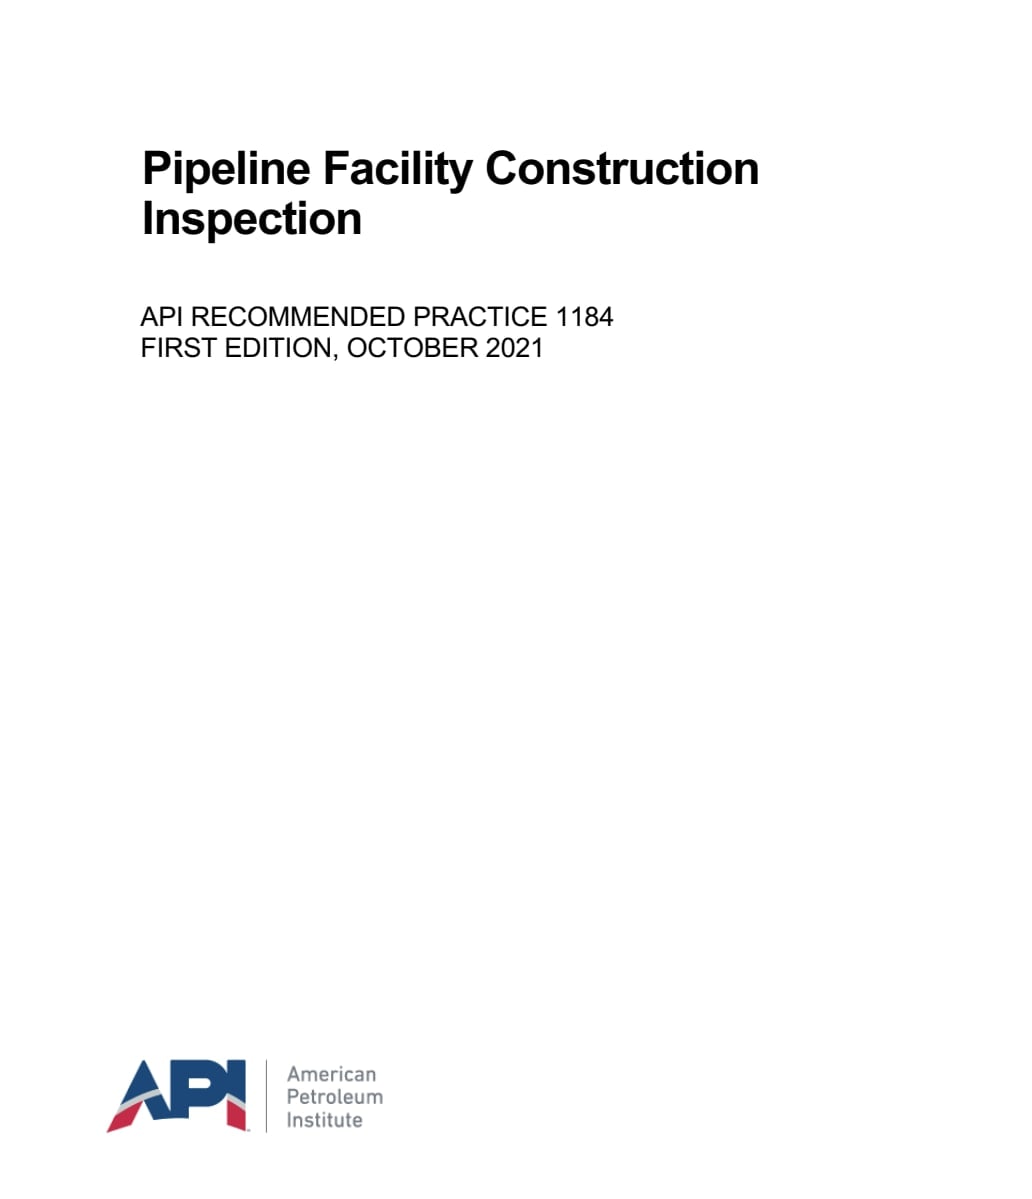 💙 اولین ویرایش استاندارد API 1184  ☄️استاندارد الزامات بازرسی ساخت تاسیسات مرتبط با خطوط لوله  🌺API 1184  2021  🍓Pipeline Facility Construction Inspection